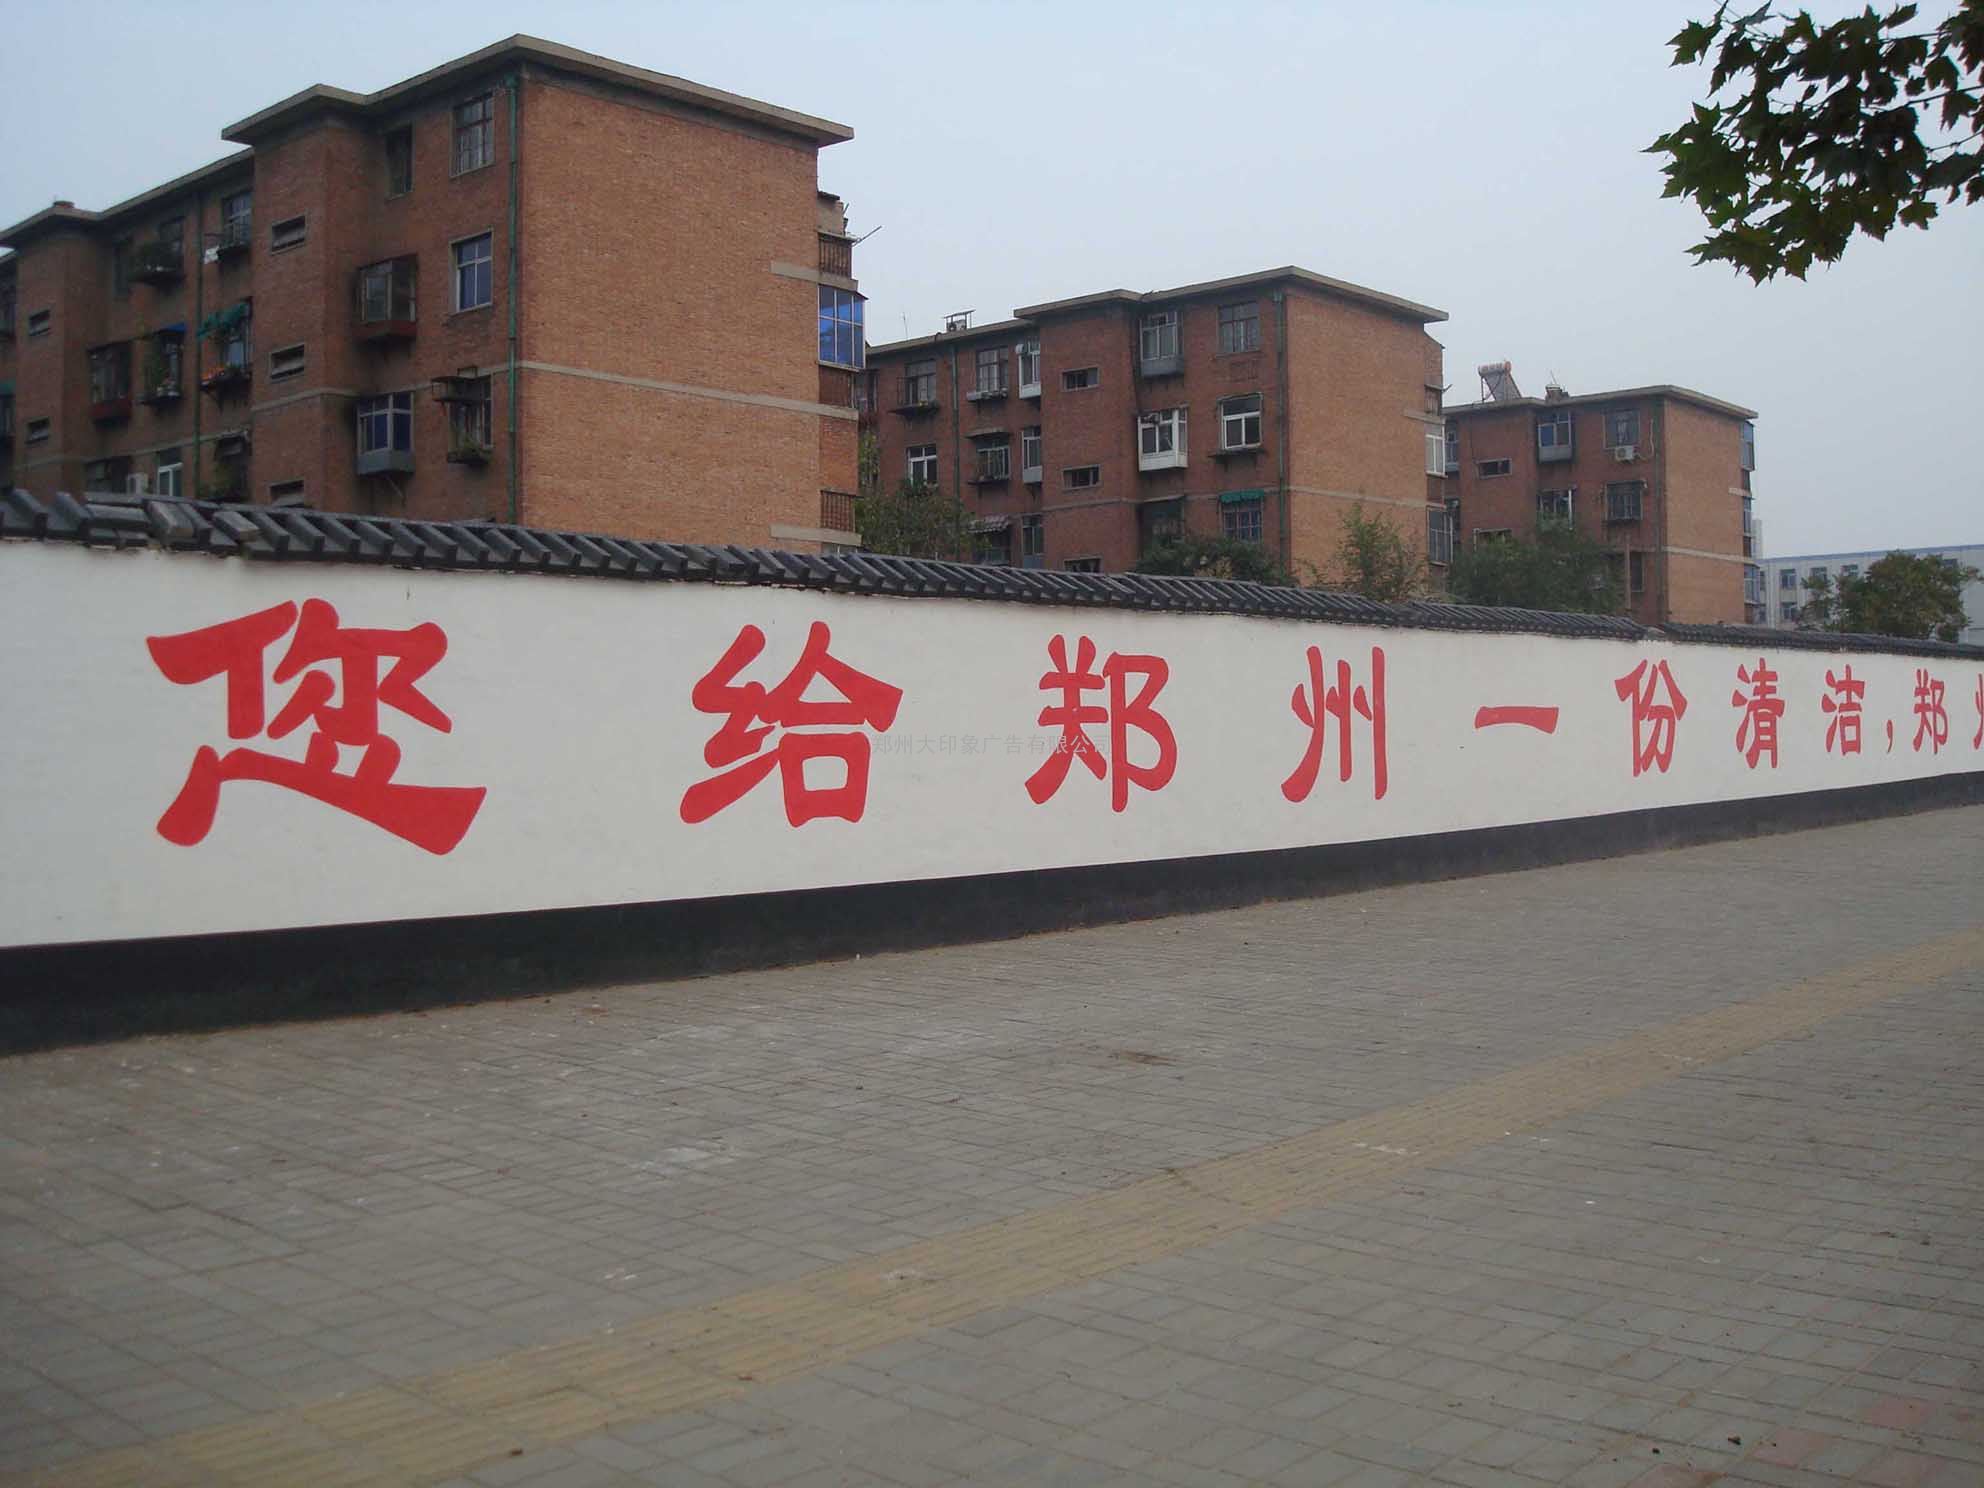 +河南+郑州墙体标语写大字，专业墙体标语制作公司